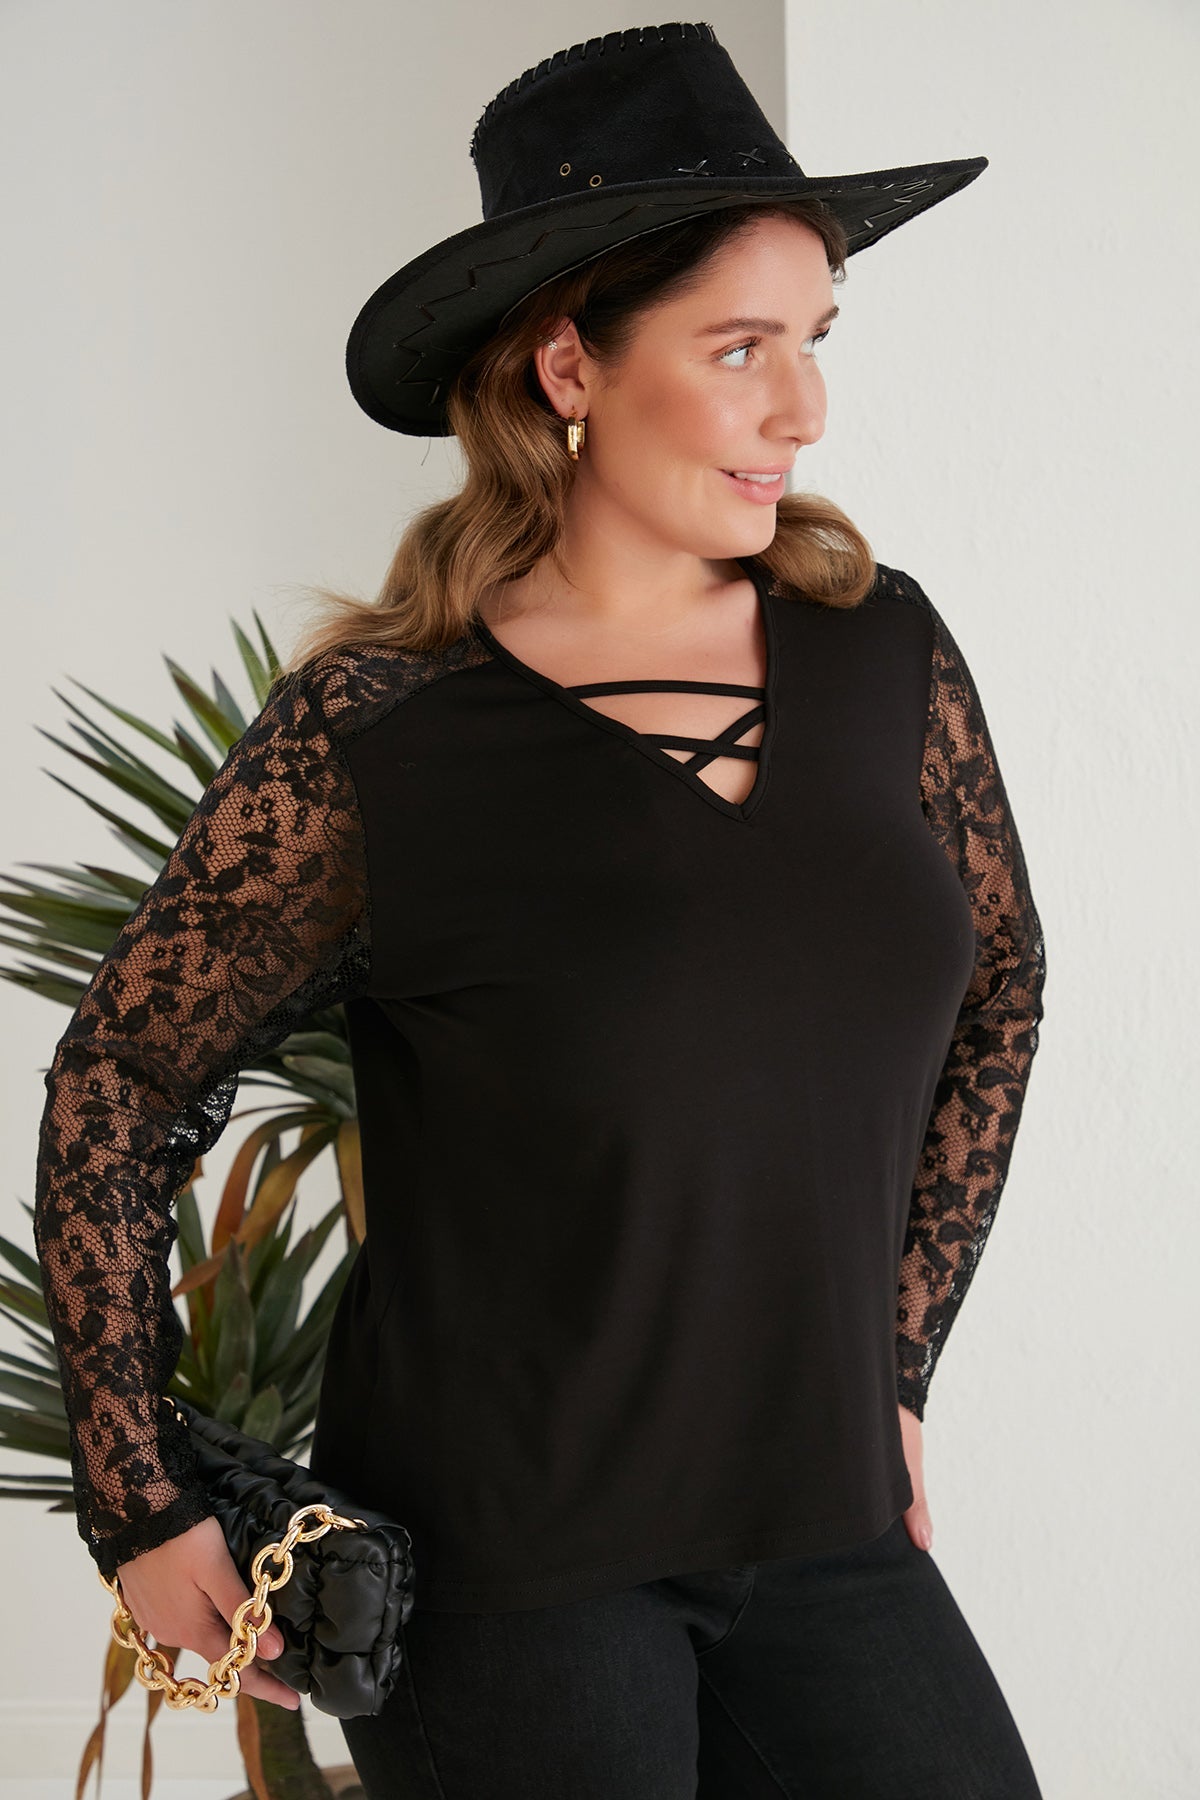 Γυναικεία μαύρη μπλούζα με δαντέλα σε μεγάλα μεγέθη